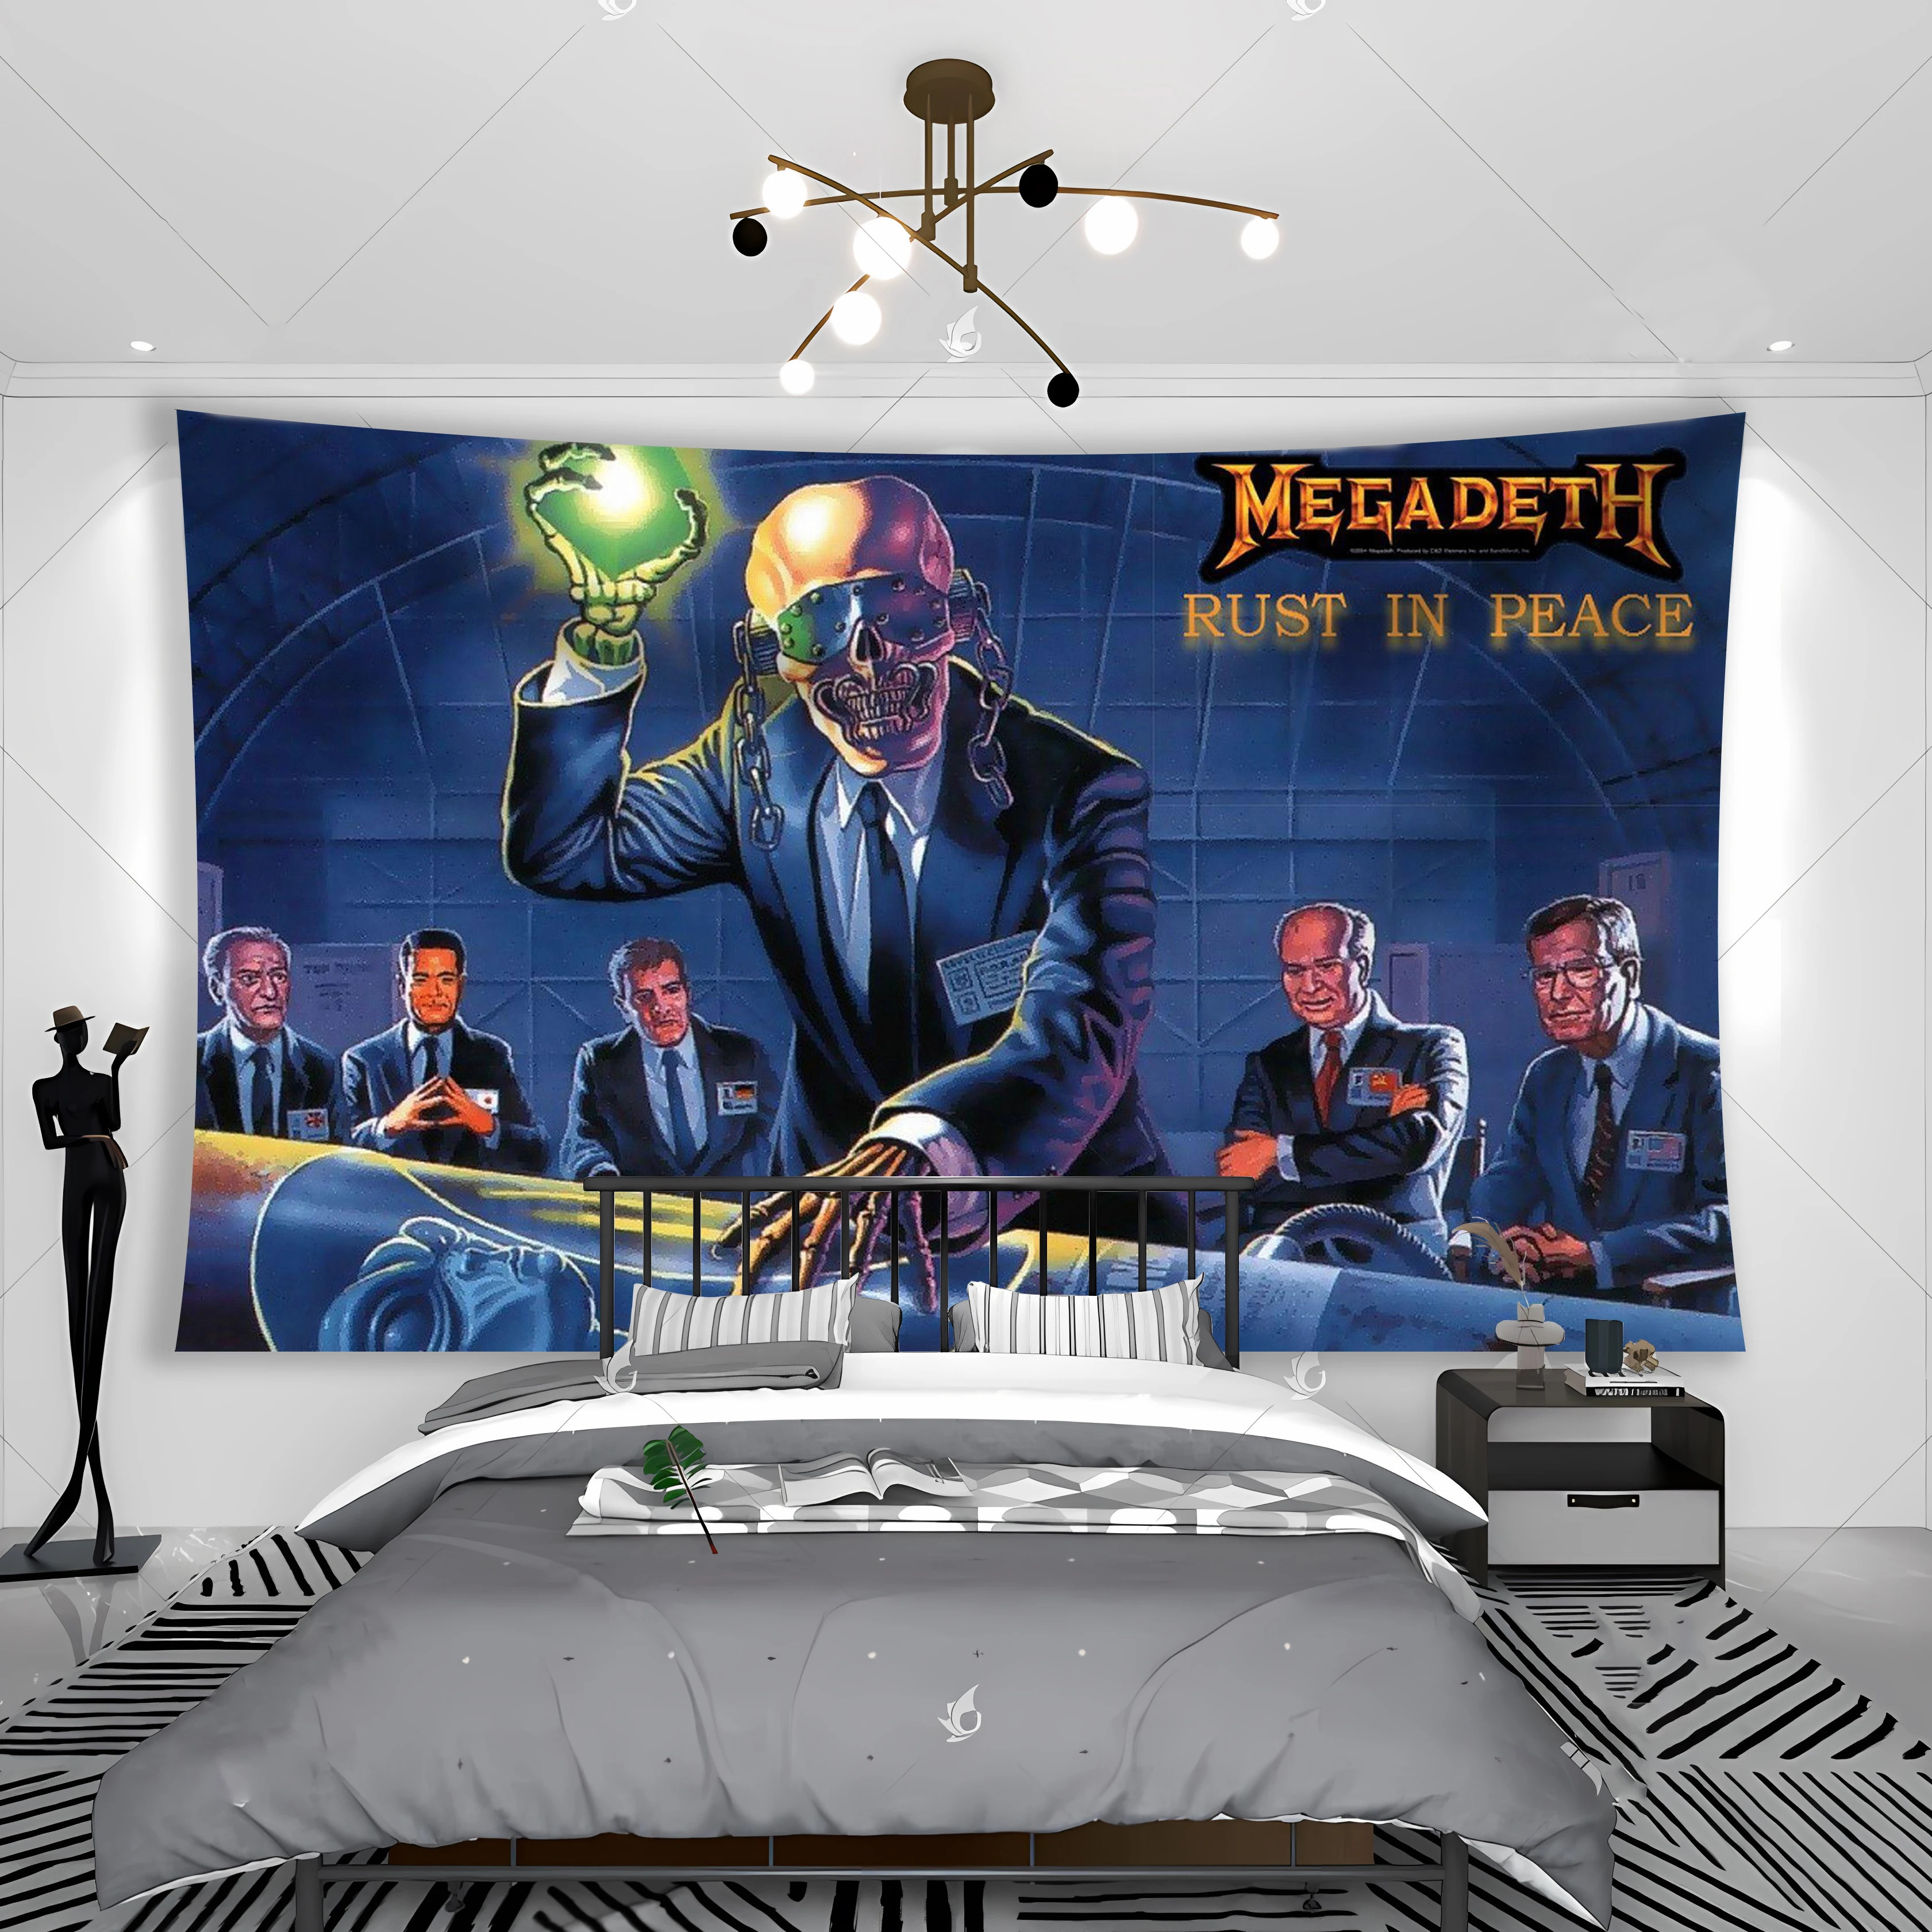 Megadeths Heavy Metal Rock Band Tapestry Banner Flag Club Bar Room Bedside Hanging Decoration